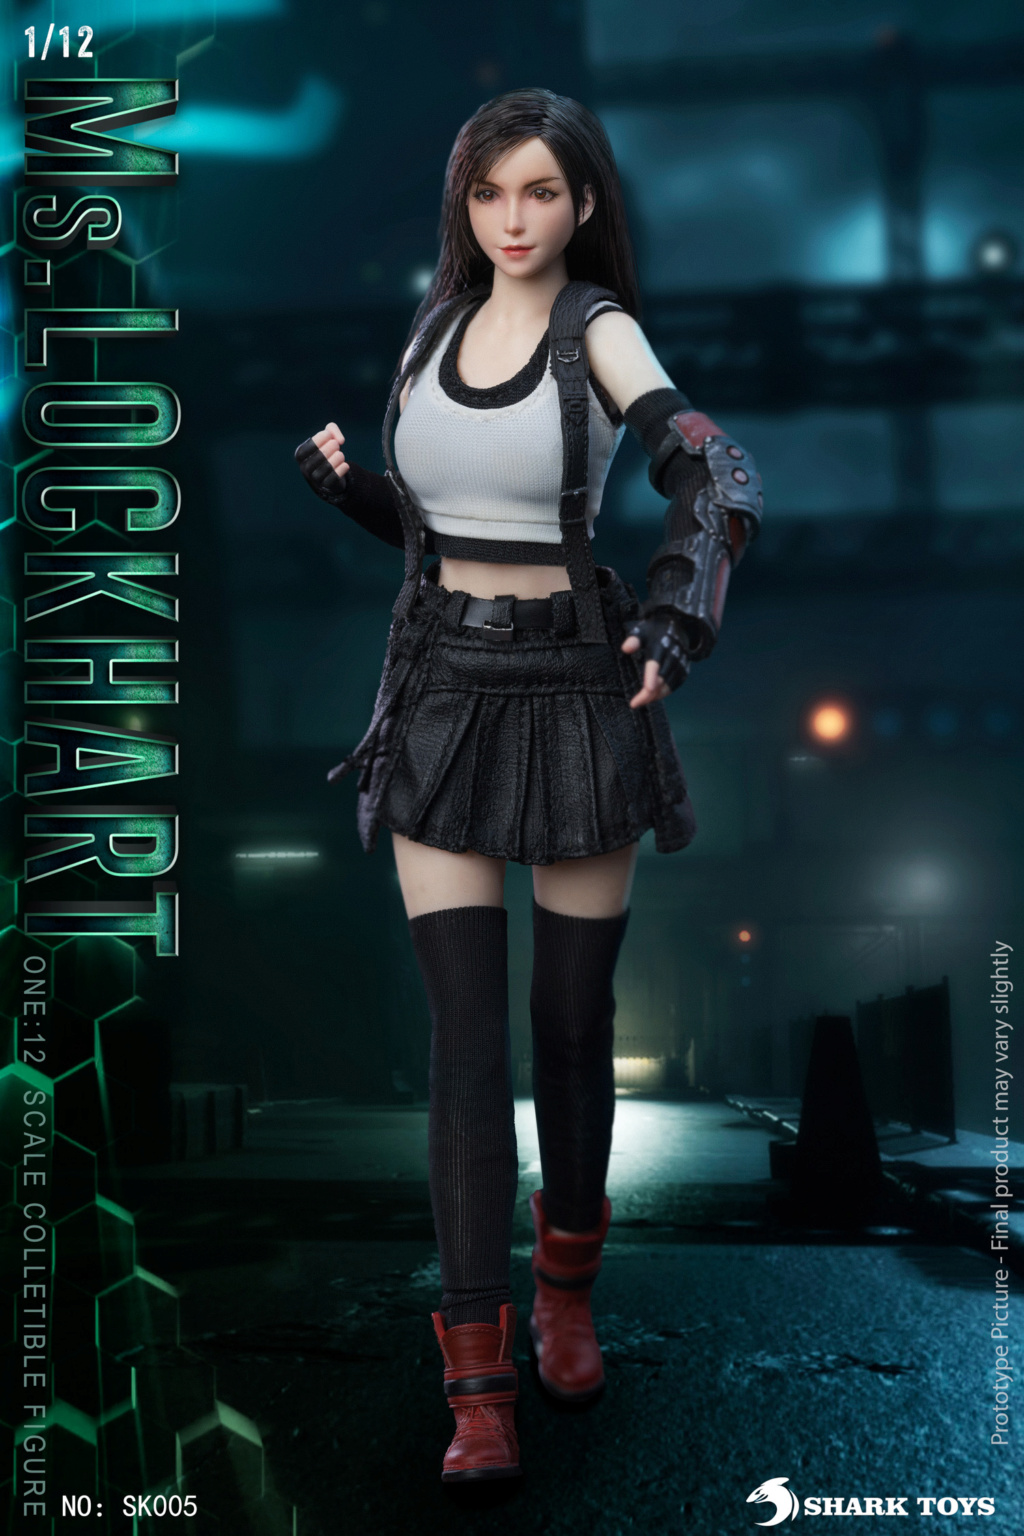 female - NEW PRODUCT: SharkToys: SK005 1/12 Scale Fantasy Female Warrior 1536